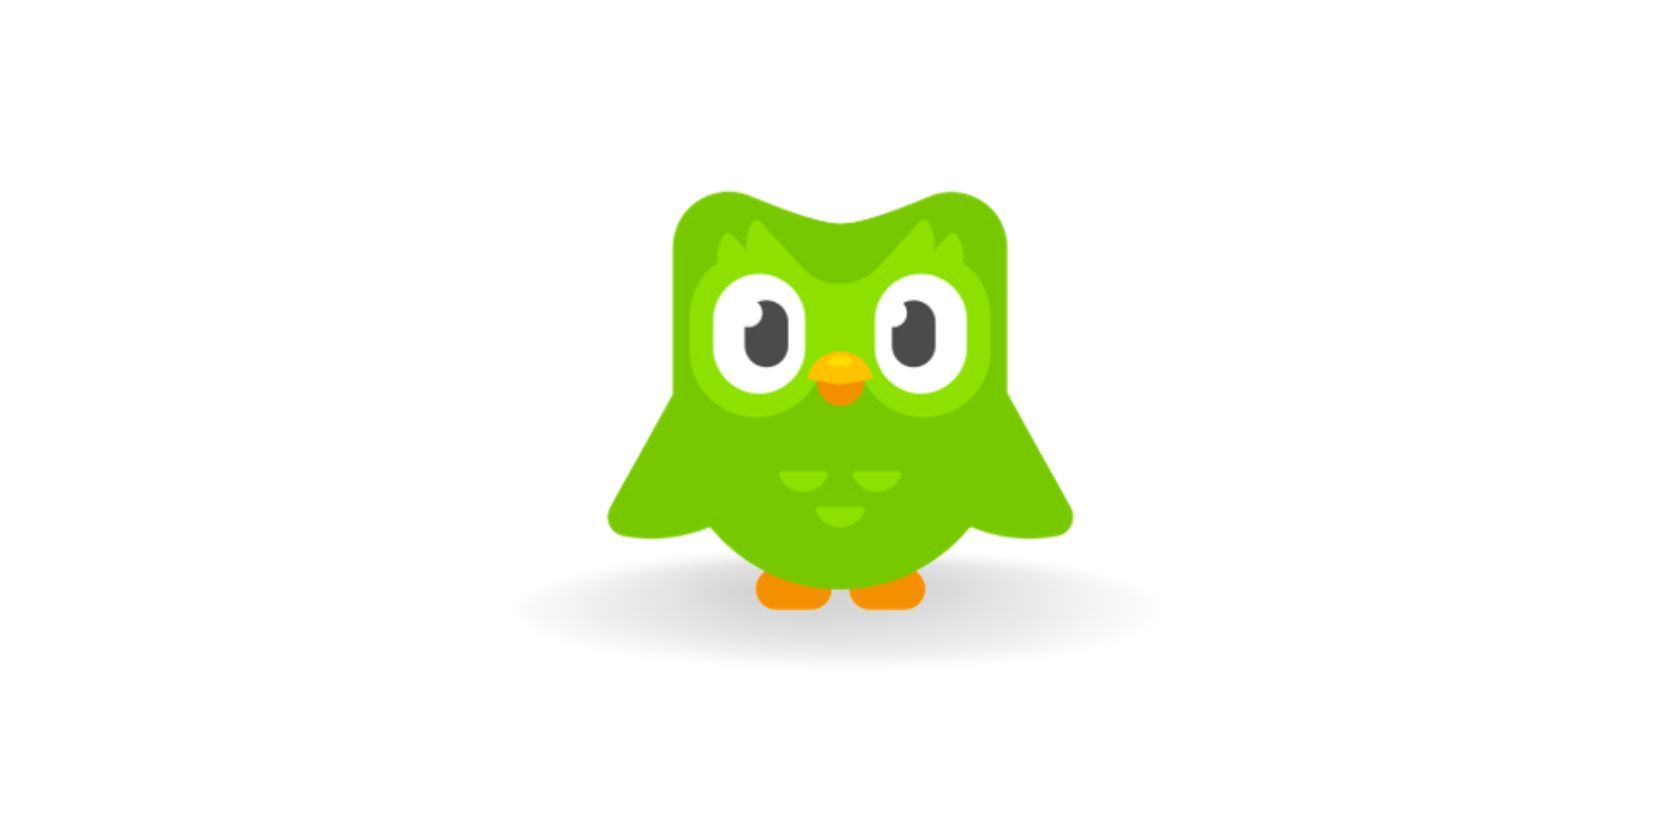 Duolingo owl seen on white background 